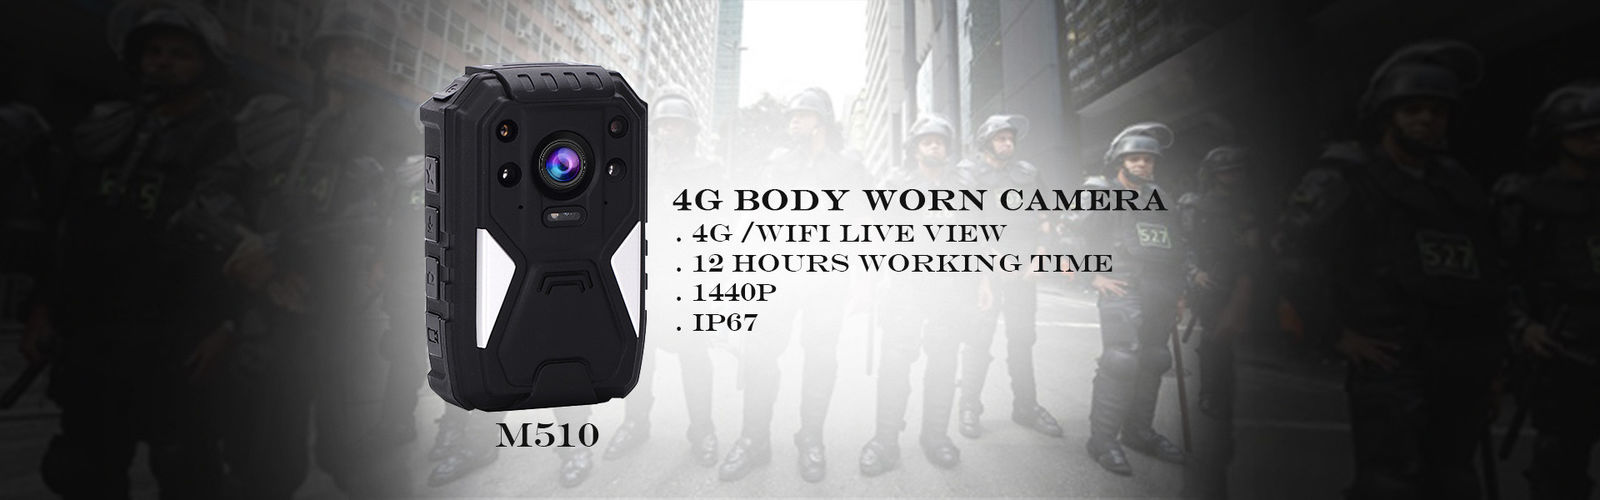 Porcellana il la cosa migliore macchina fotografica del corpo 4G sulle vendite